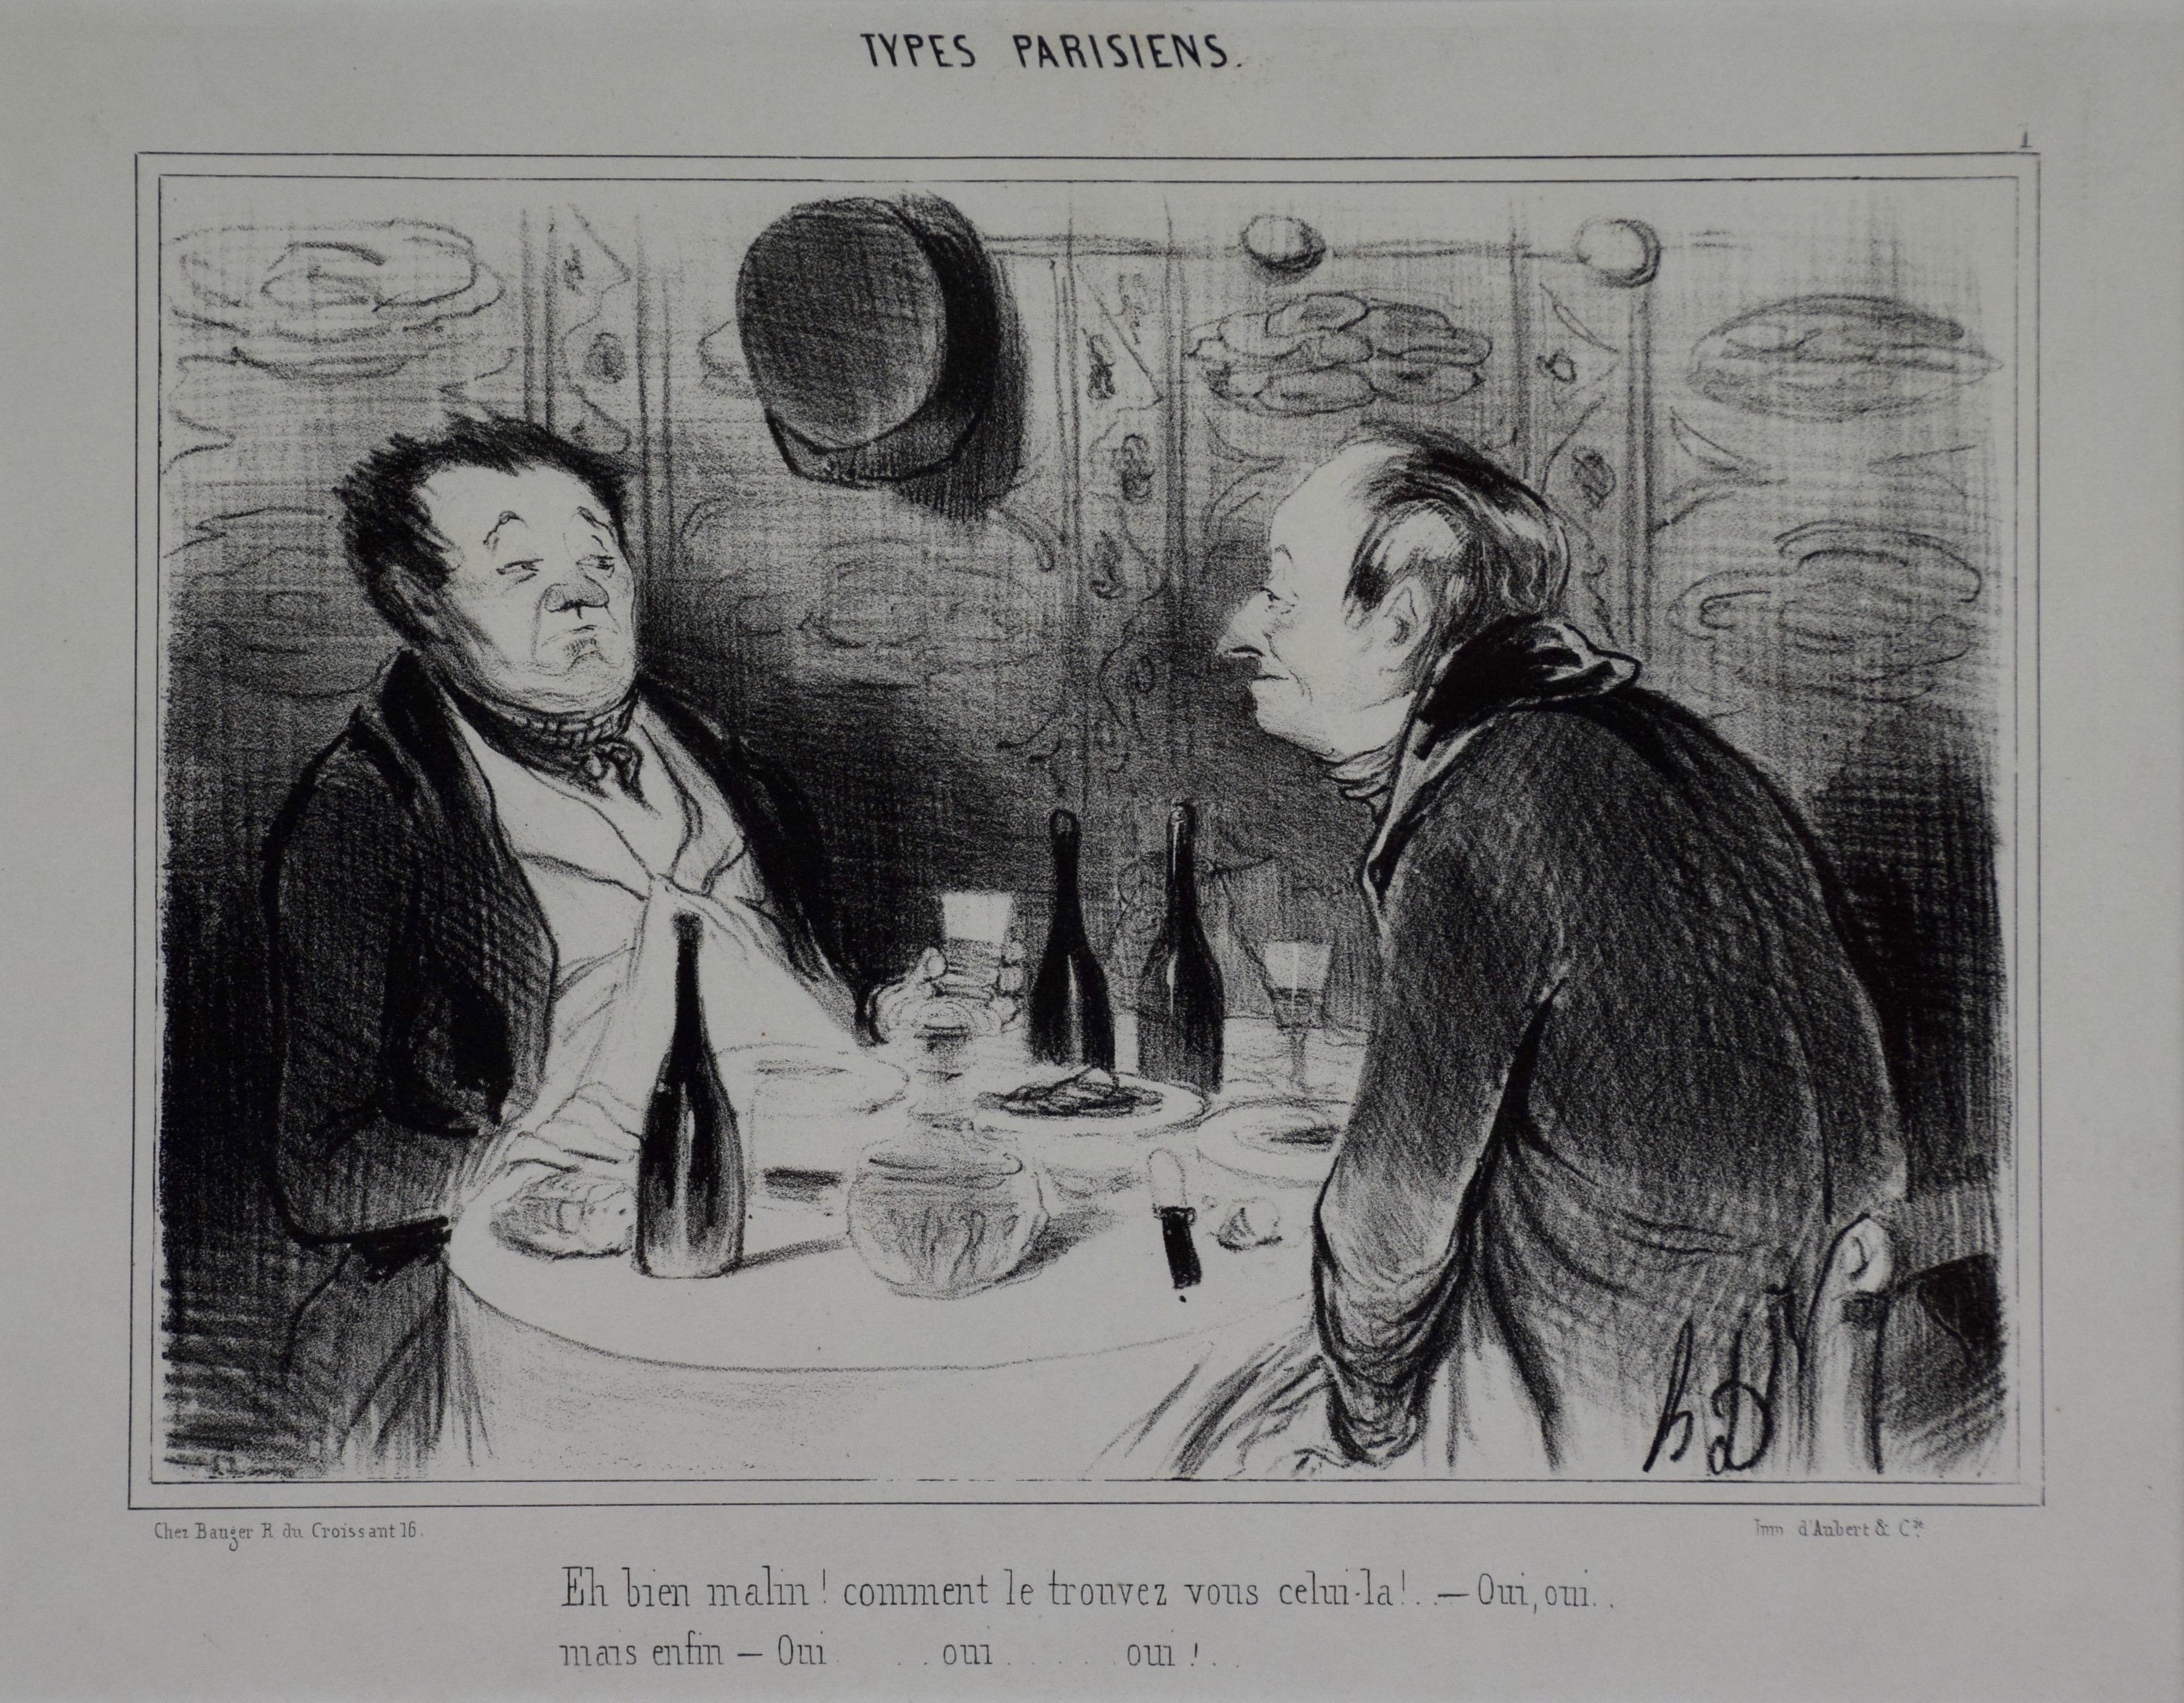 Daumier Lithographie satirique représentant des hommes français dégustant et critiquant du vin - Print de Honoré Daumier